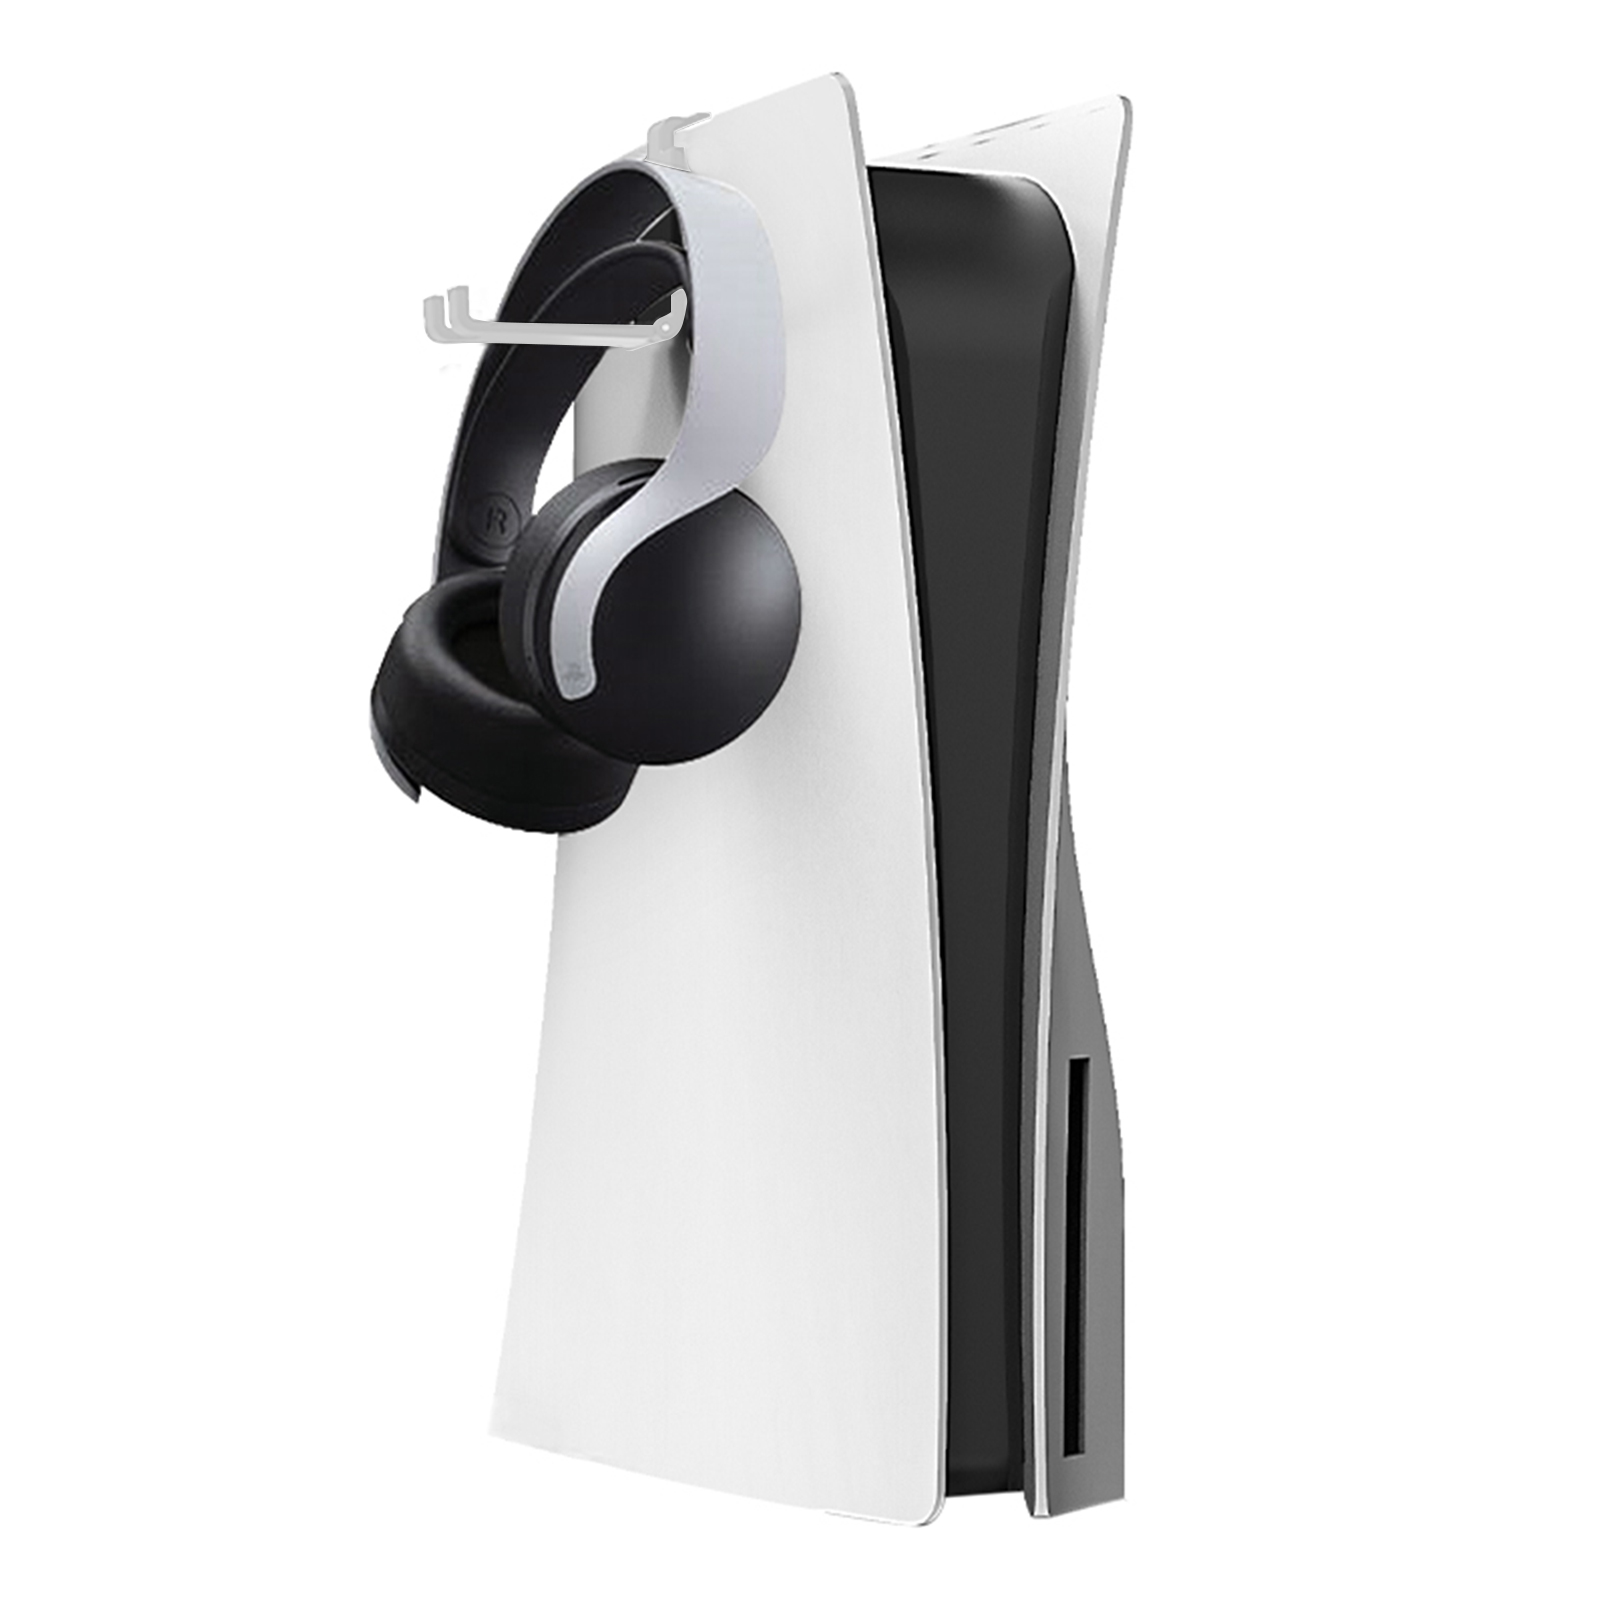 Wieszak na słuchawki do pulsu 3D zestaw słuchawkowy Ruchable Organizer Stand for PS5 host Xbox Game Controller konsola zestaw słuchawkowy uchwyt hakowy